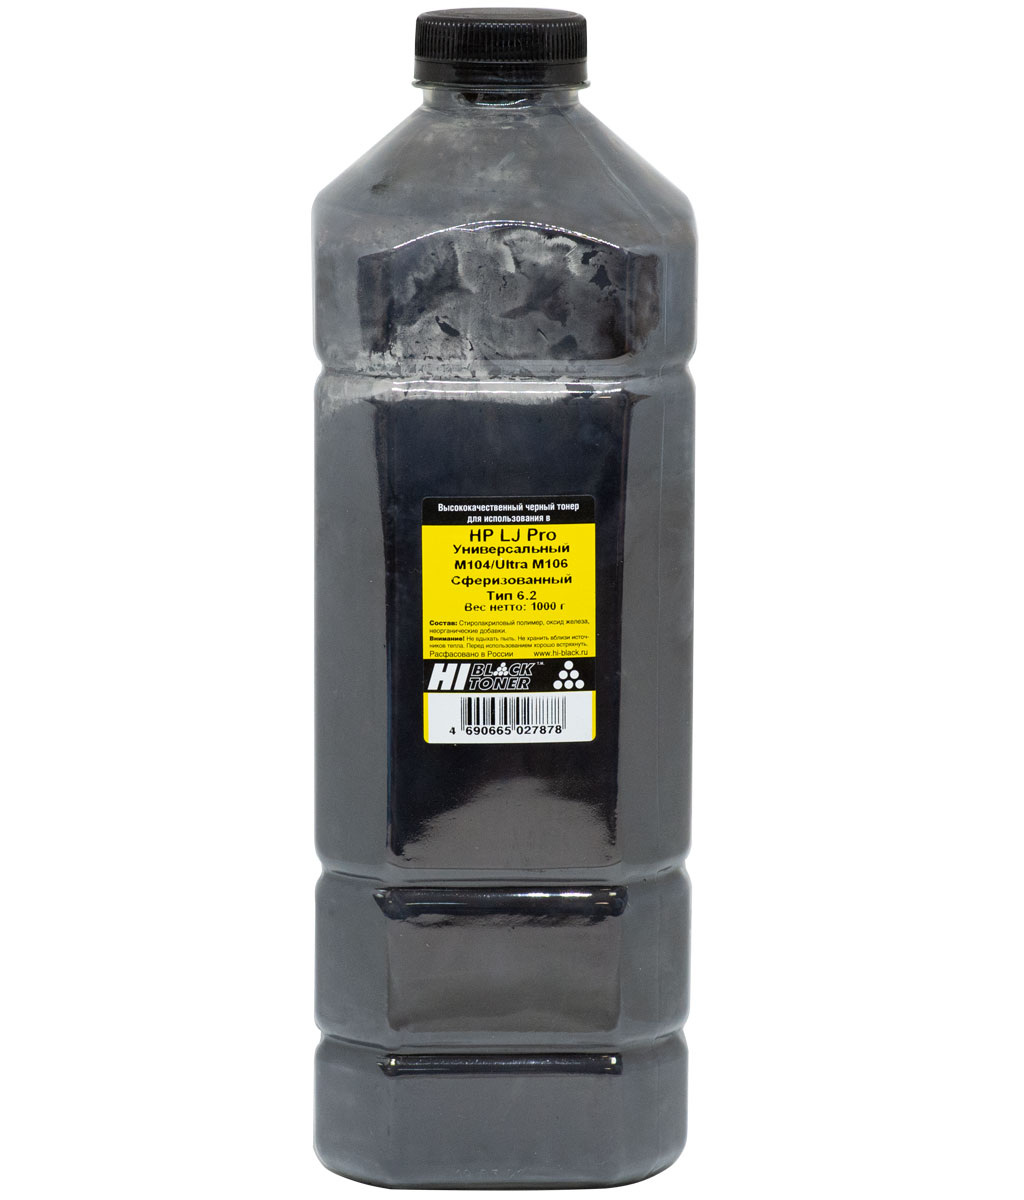 Тонер универсальный Hi-Black (CF218A) для HP LJ Pro M104/ Ultra M106, Тип 6.2, сферизованный, чёрный (1000 гр.)